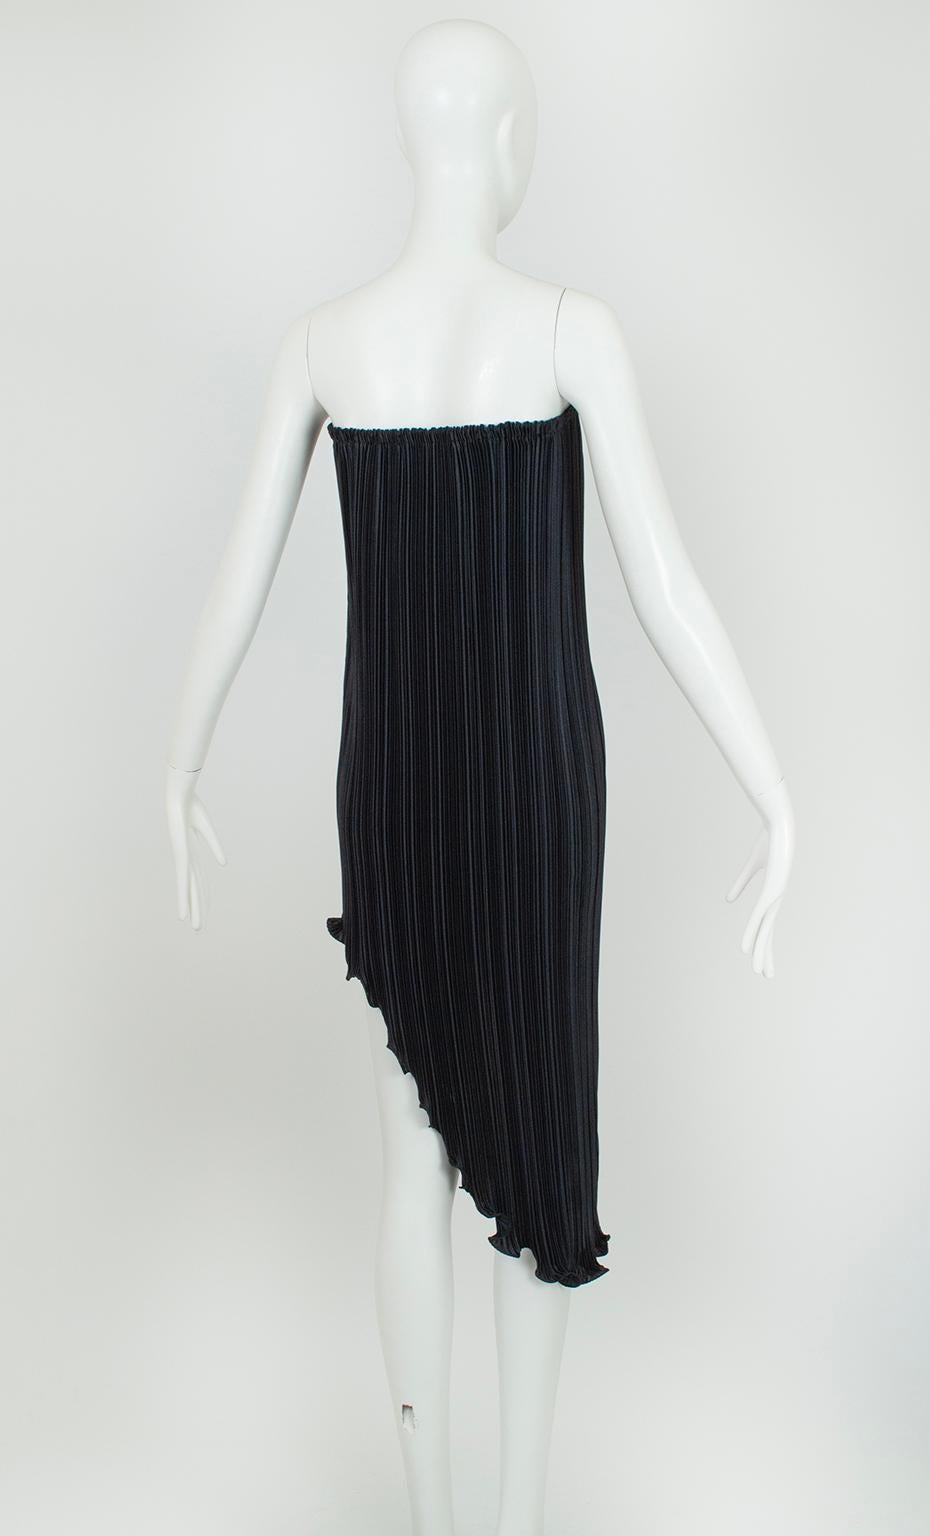 New Tarquin Ebker Black White Asymmetrical Delphos Dress w Provenance – S, 1978 For Sale 6